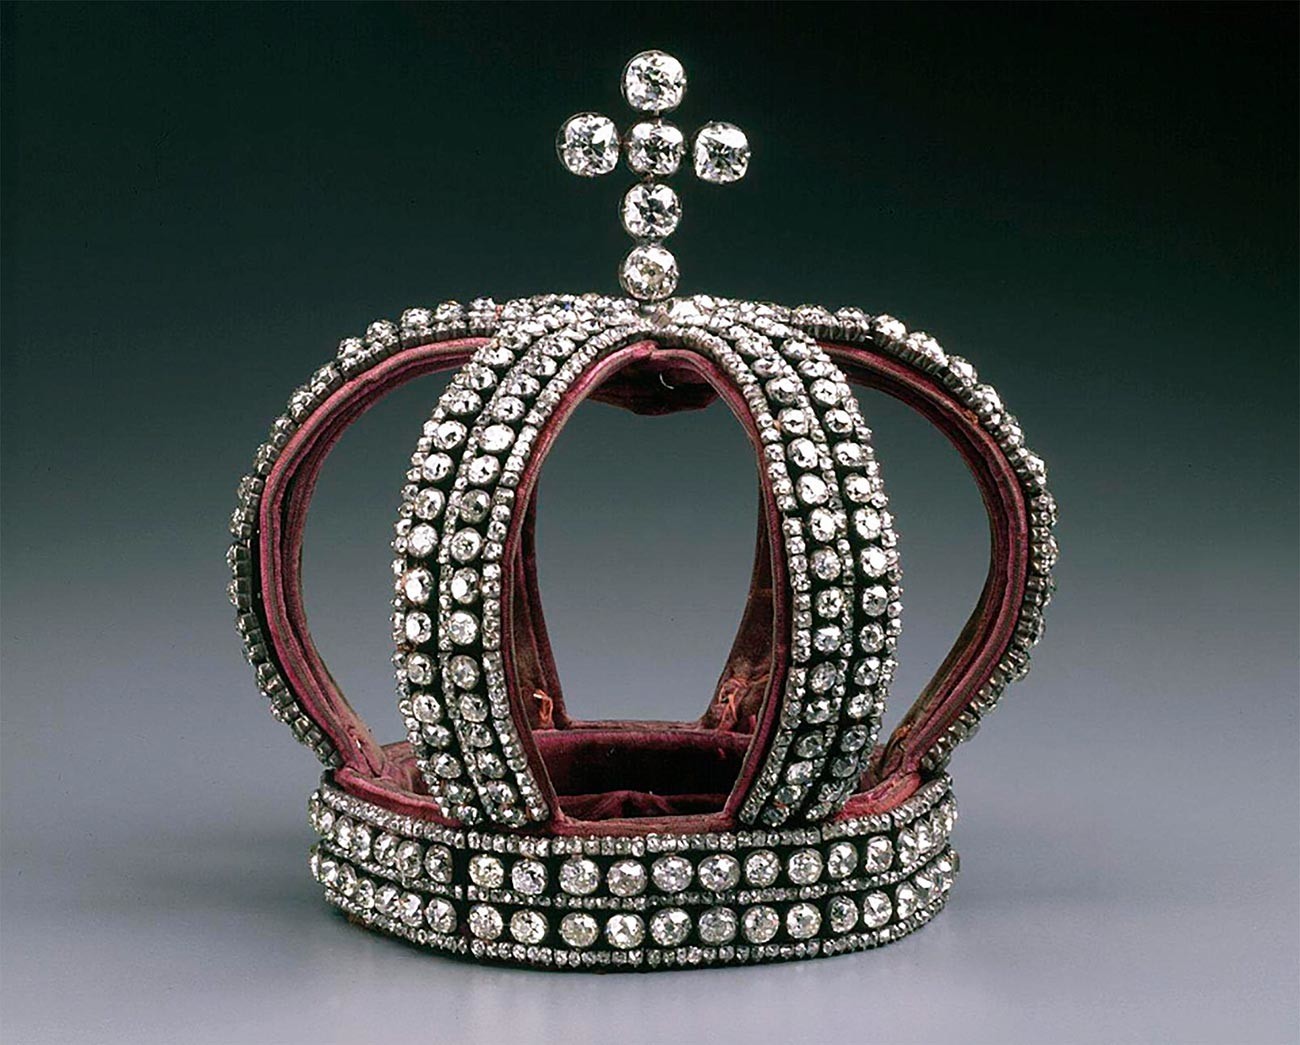 A coroa imperial da família Romanov.